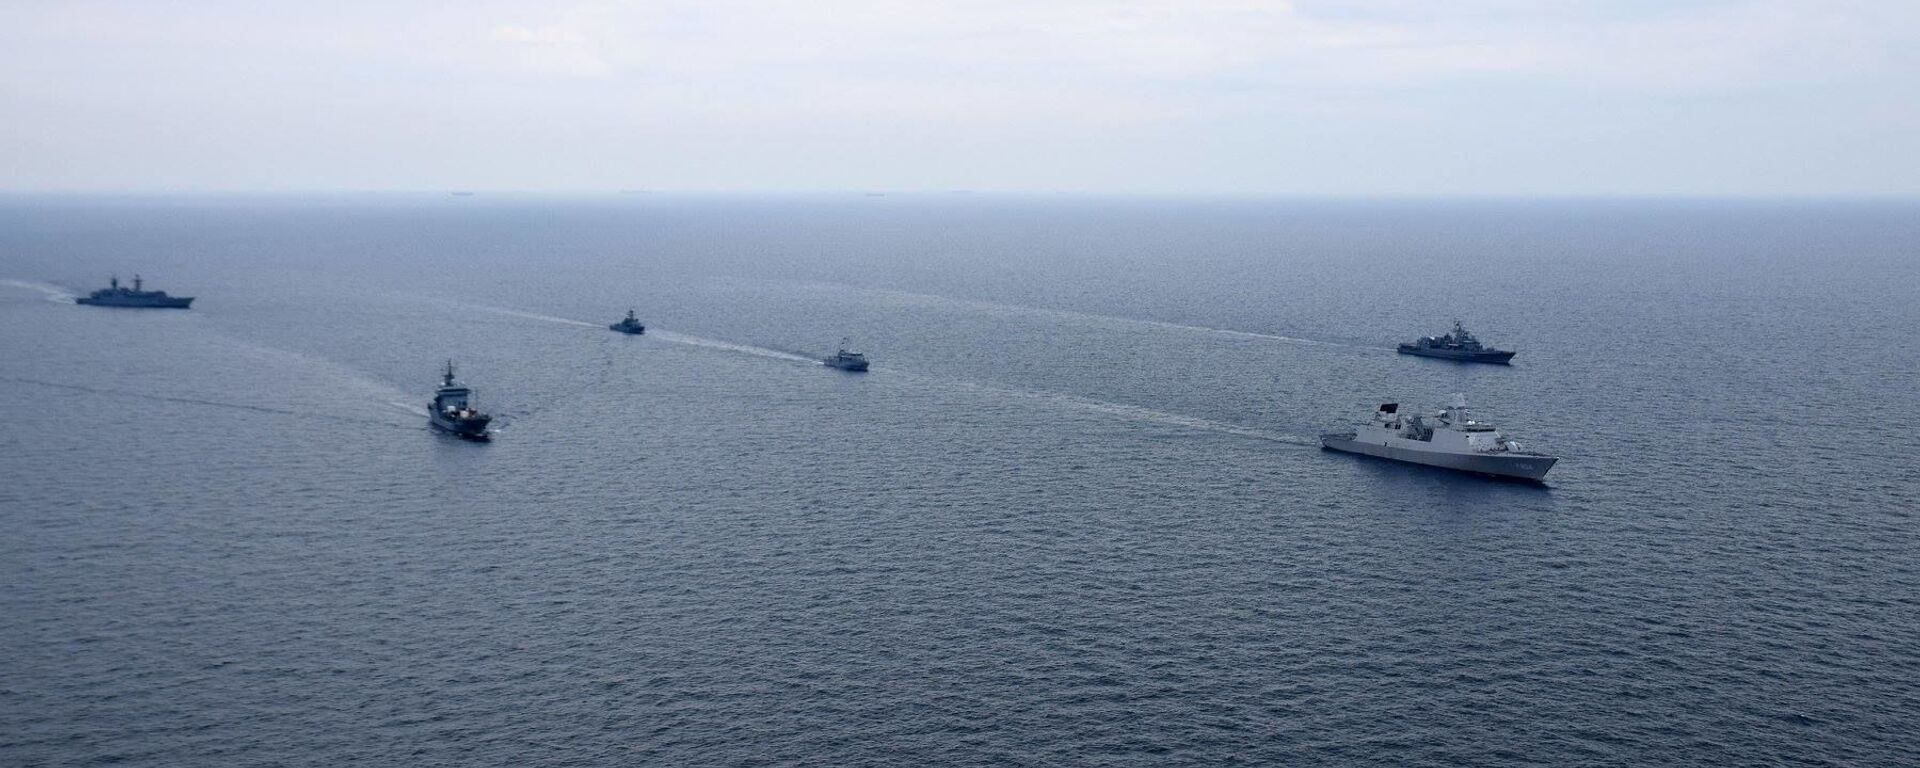 Cuộc tập luyện chung của Hải quân Ukraina và tàu chiến NATO ở Biển Đen - Sputnik Việt Nam, 1920, 14.04.2021